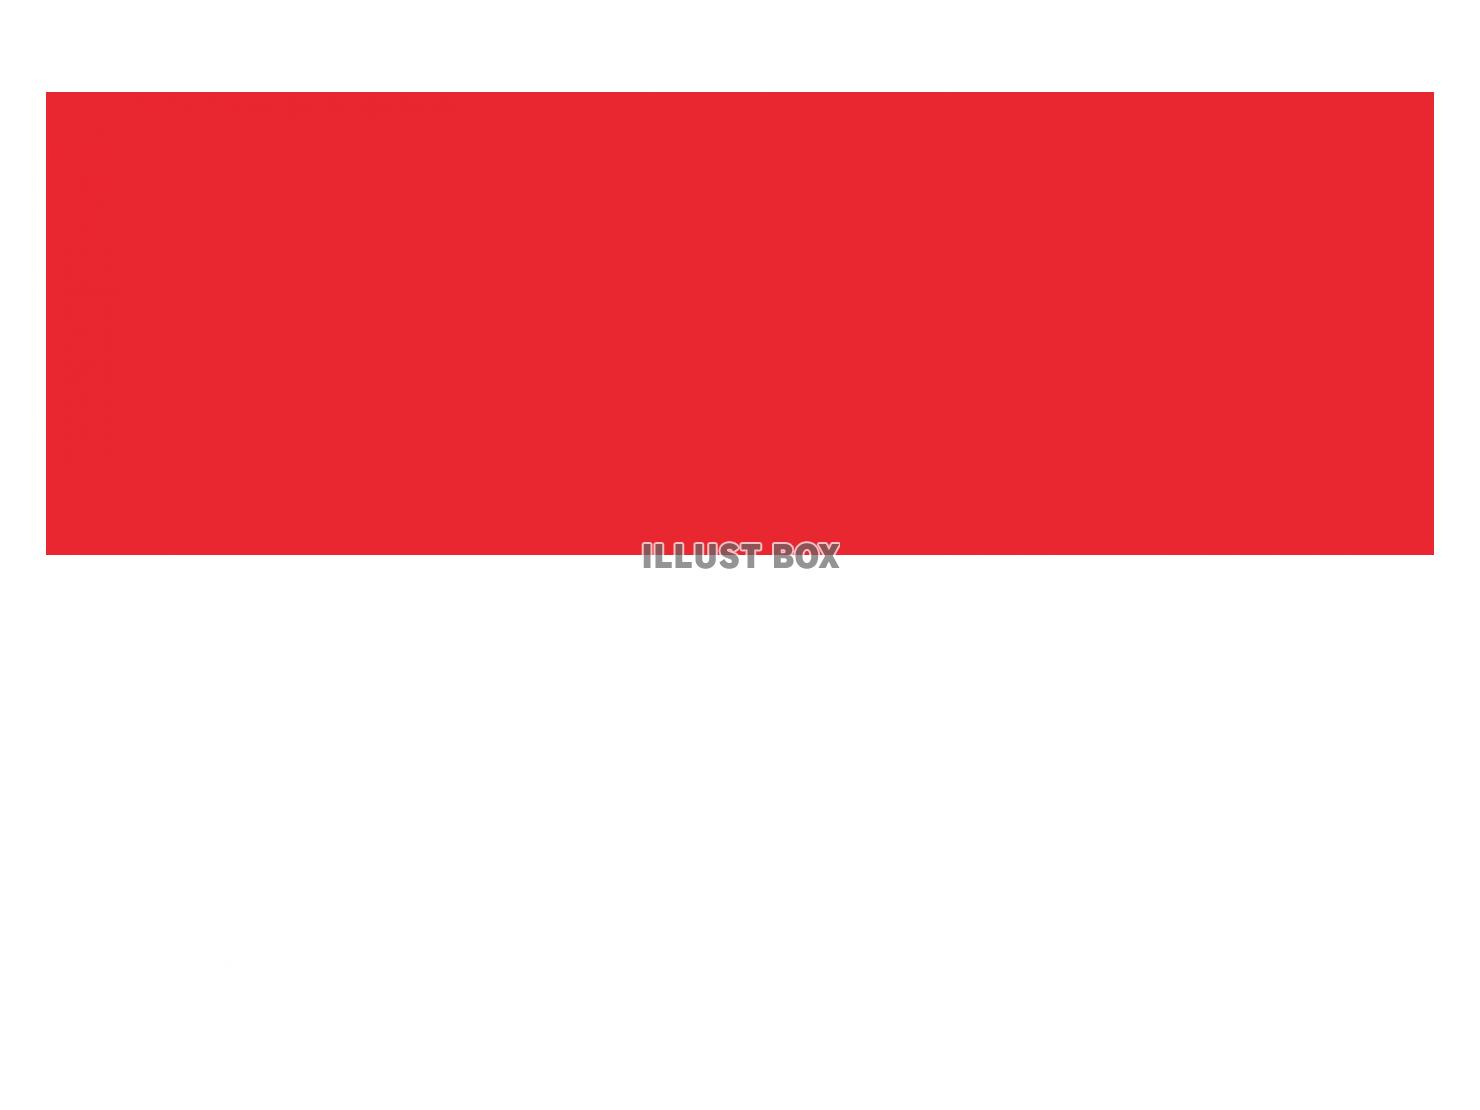 インドネシア国旗のイラストフリー素材(背景透過)